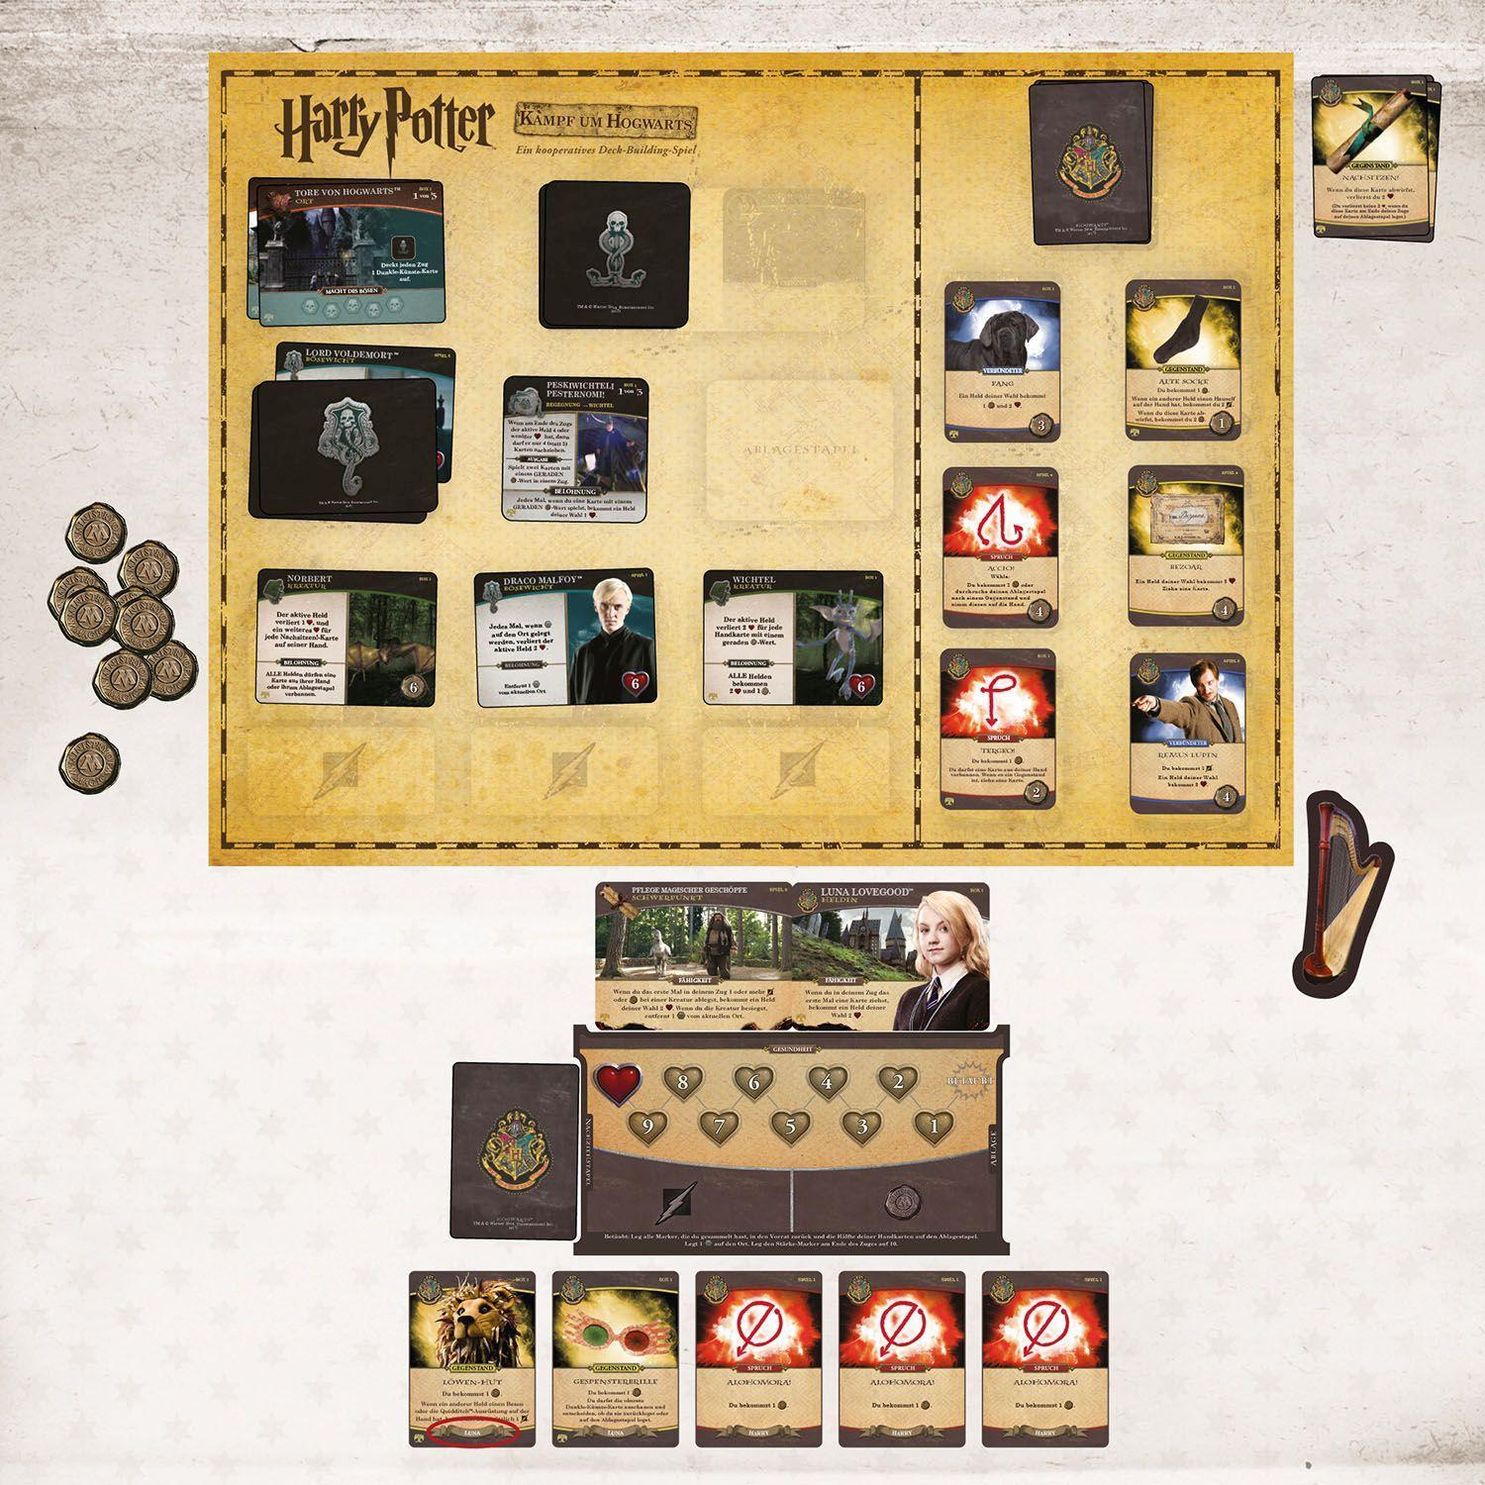 Harry Potter - Kampf um Hogwarts - Erweiterung | Weltbild.de